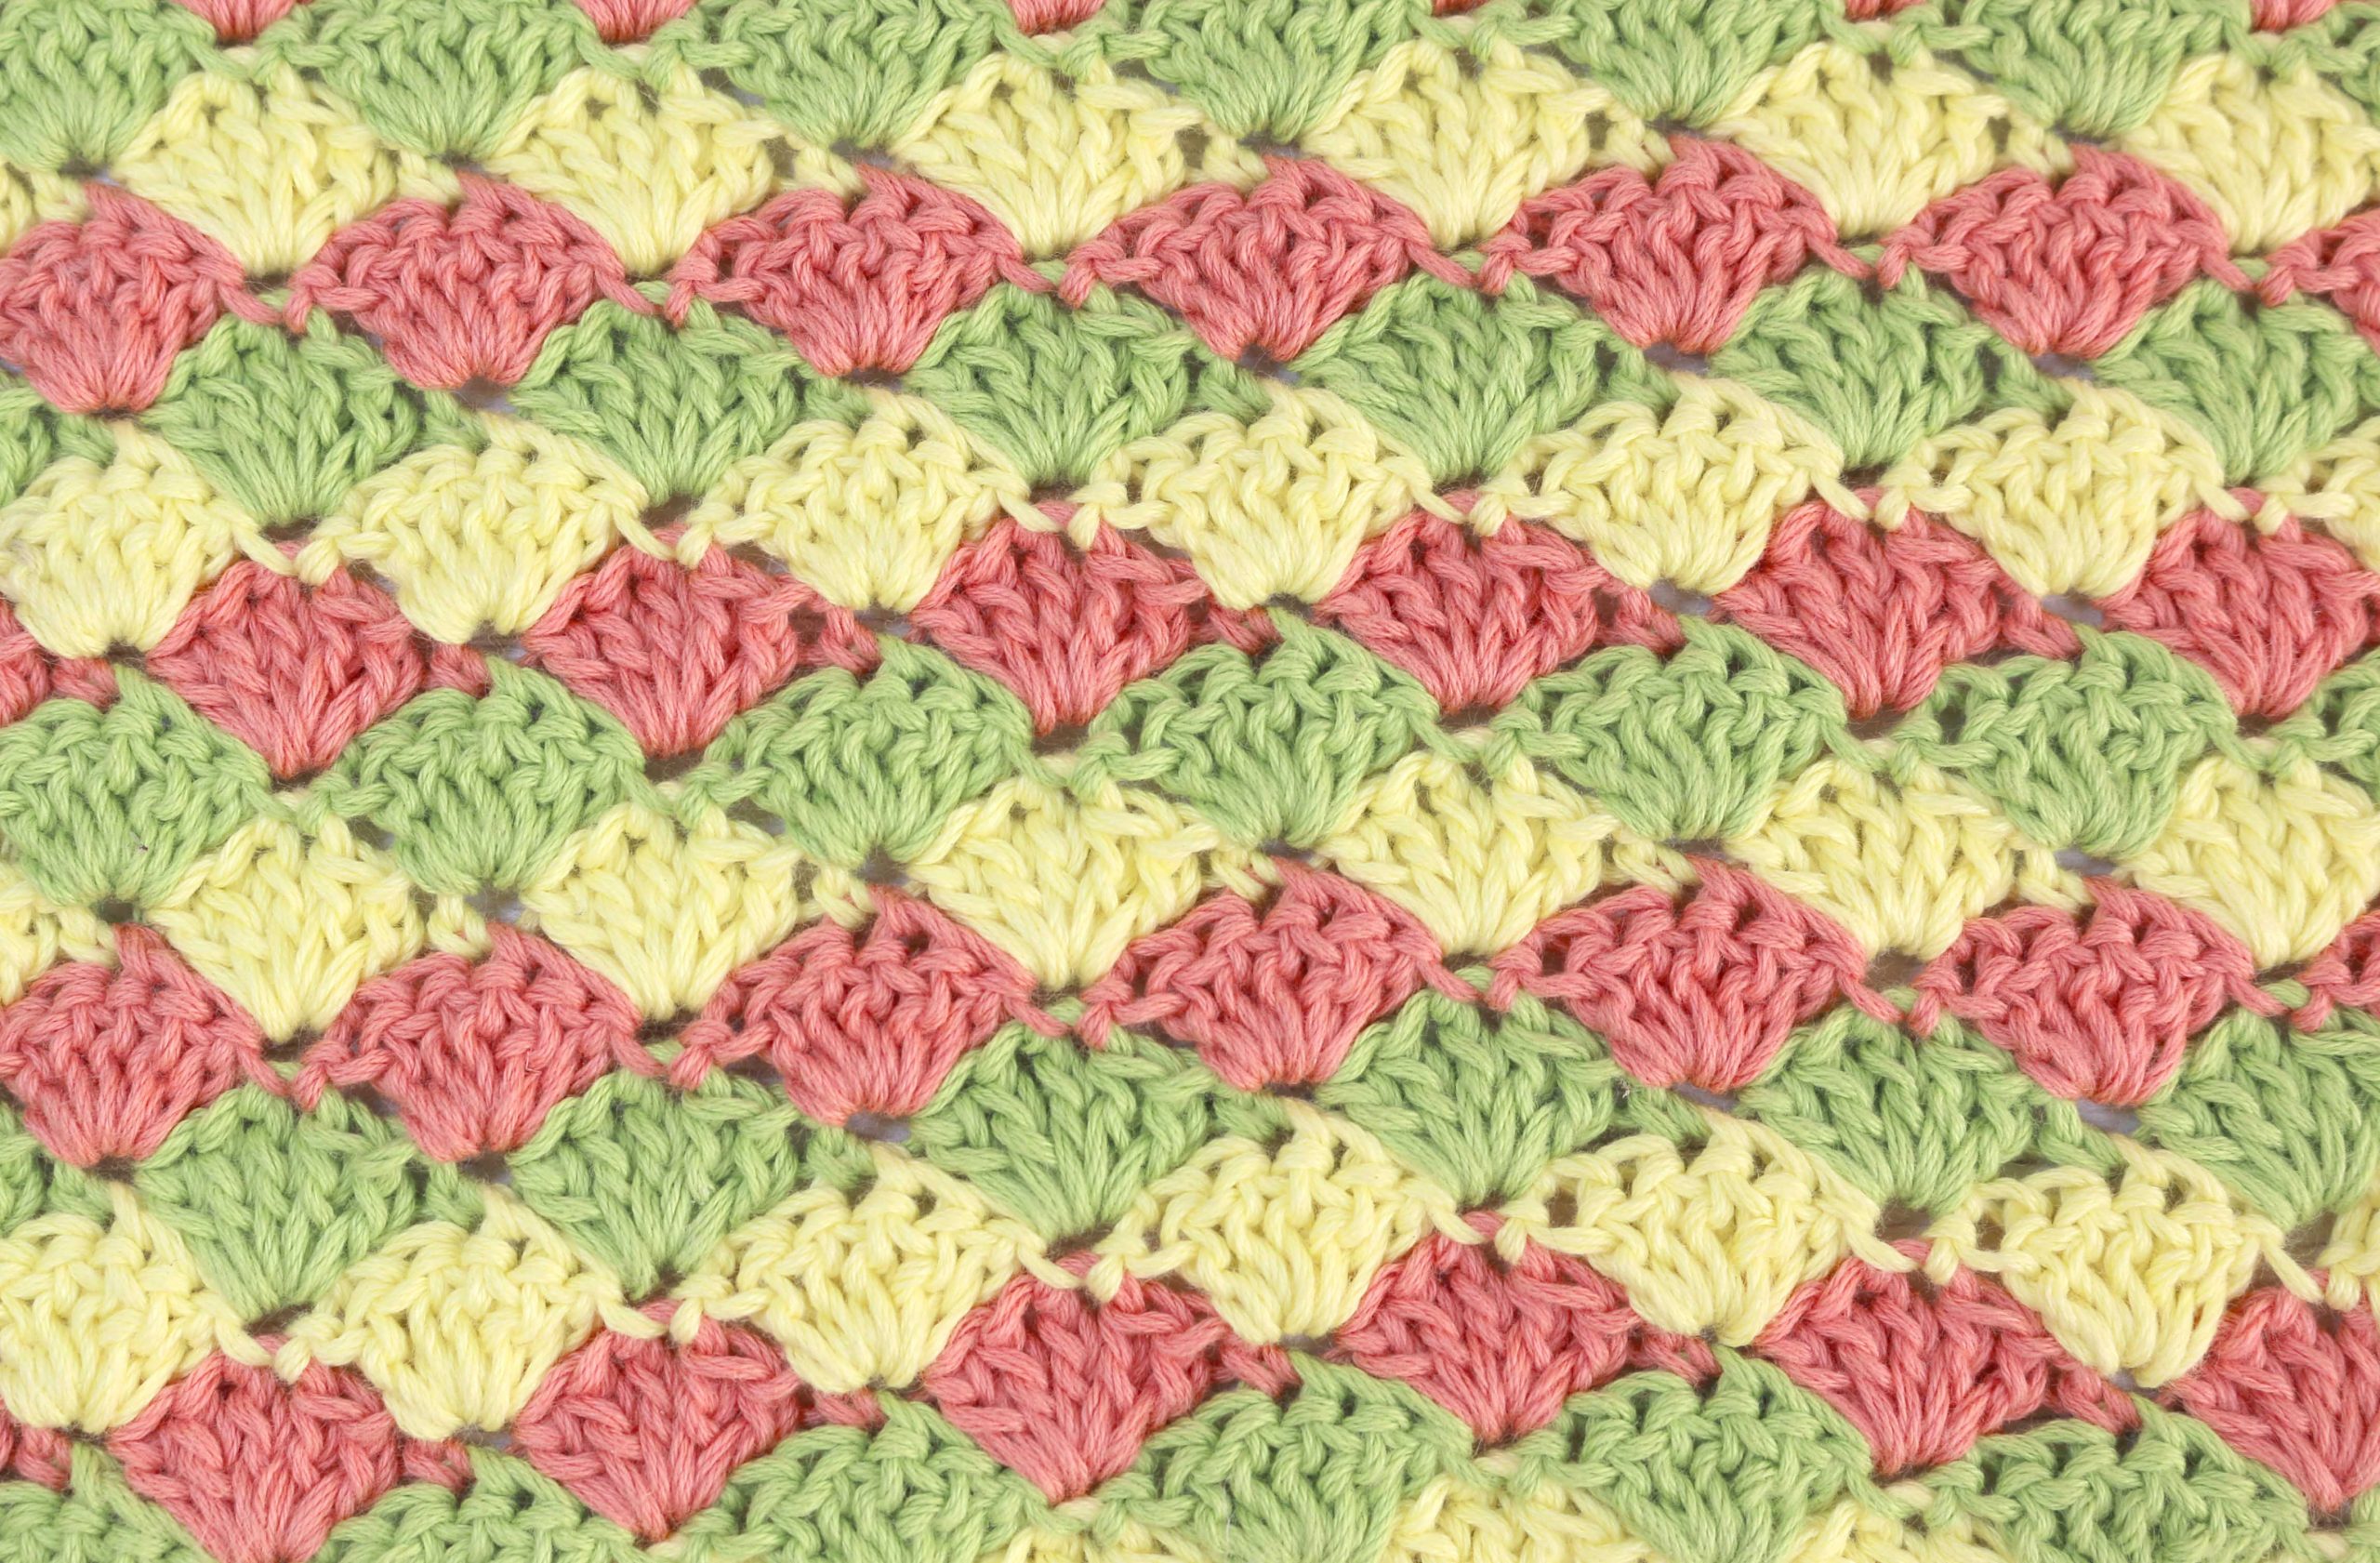 crochet shell stitch free pattern fan